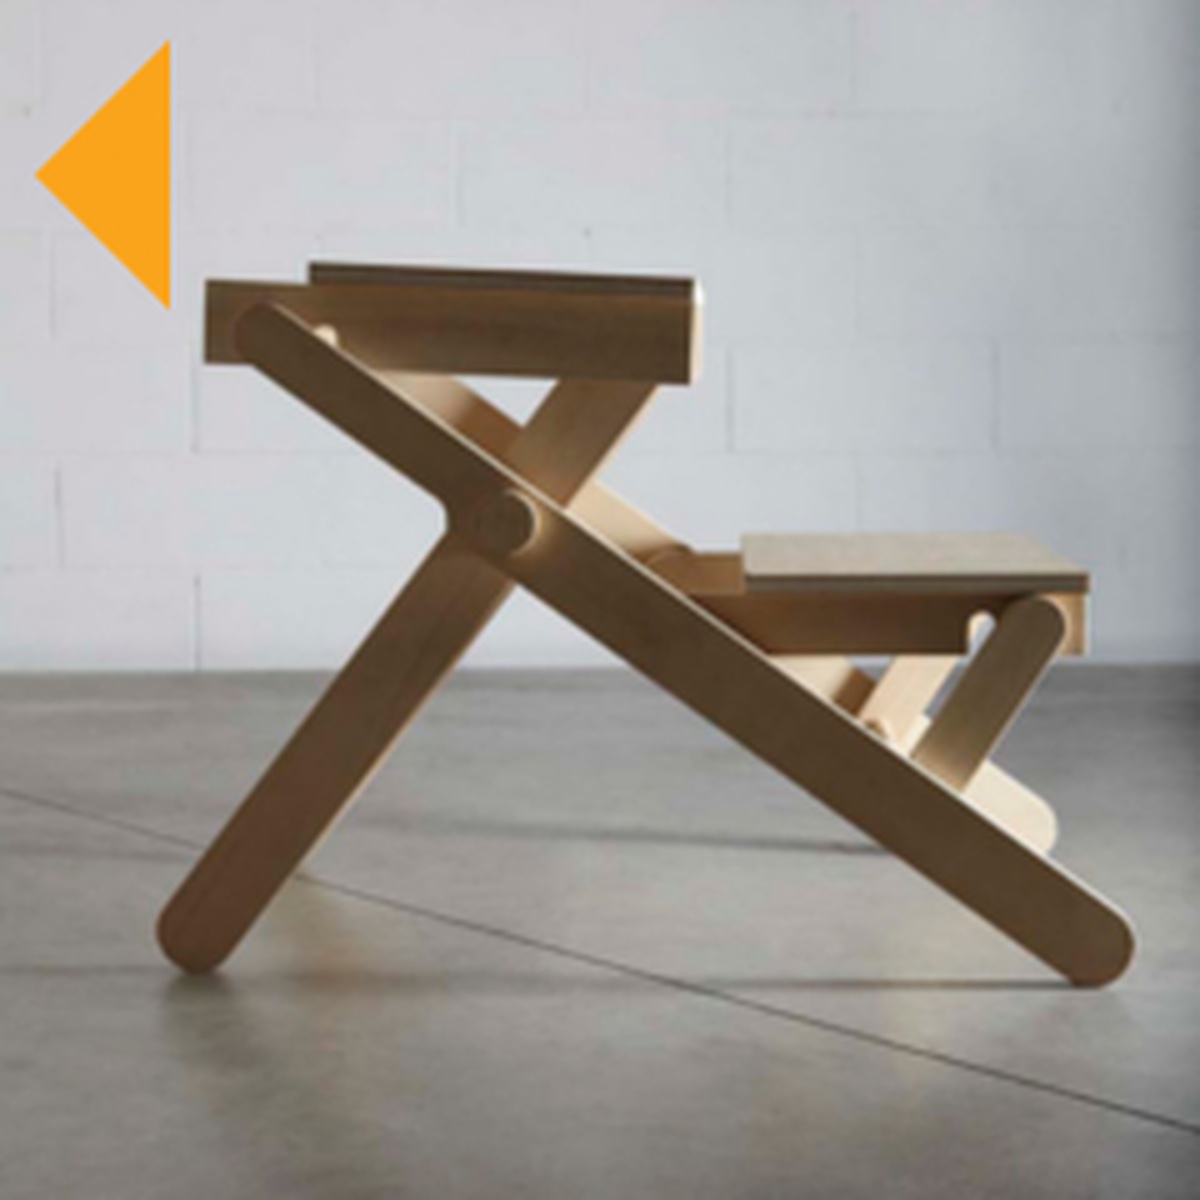 banchi, sedie, Hispaniola-Design per Solidarietà, “ABC”, Complementi d’arredo, Giulio Iacchetti, Emmanuel Zonta